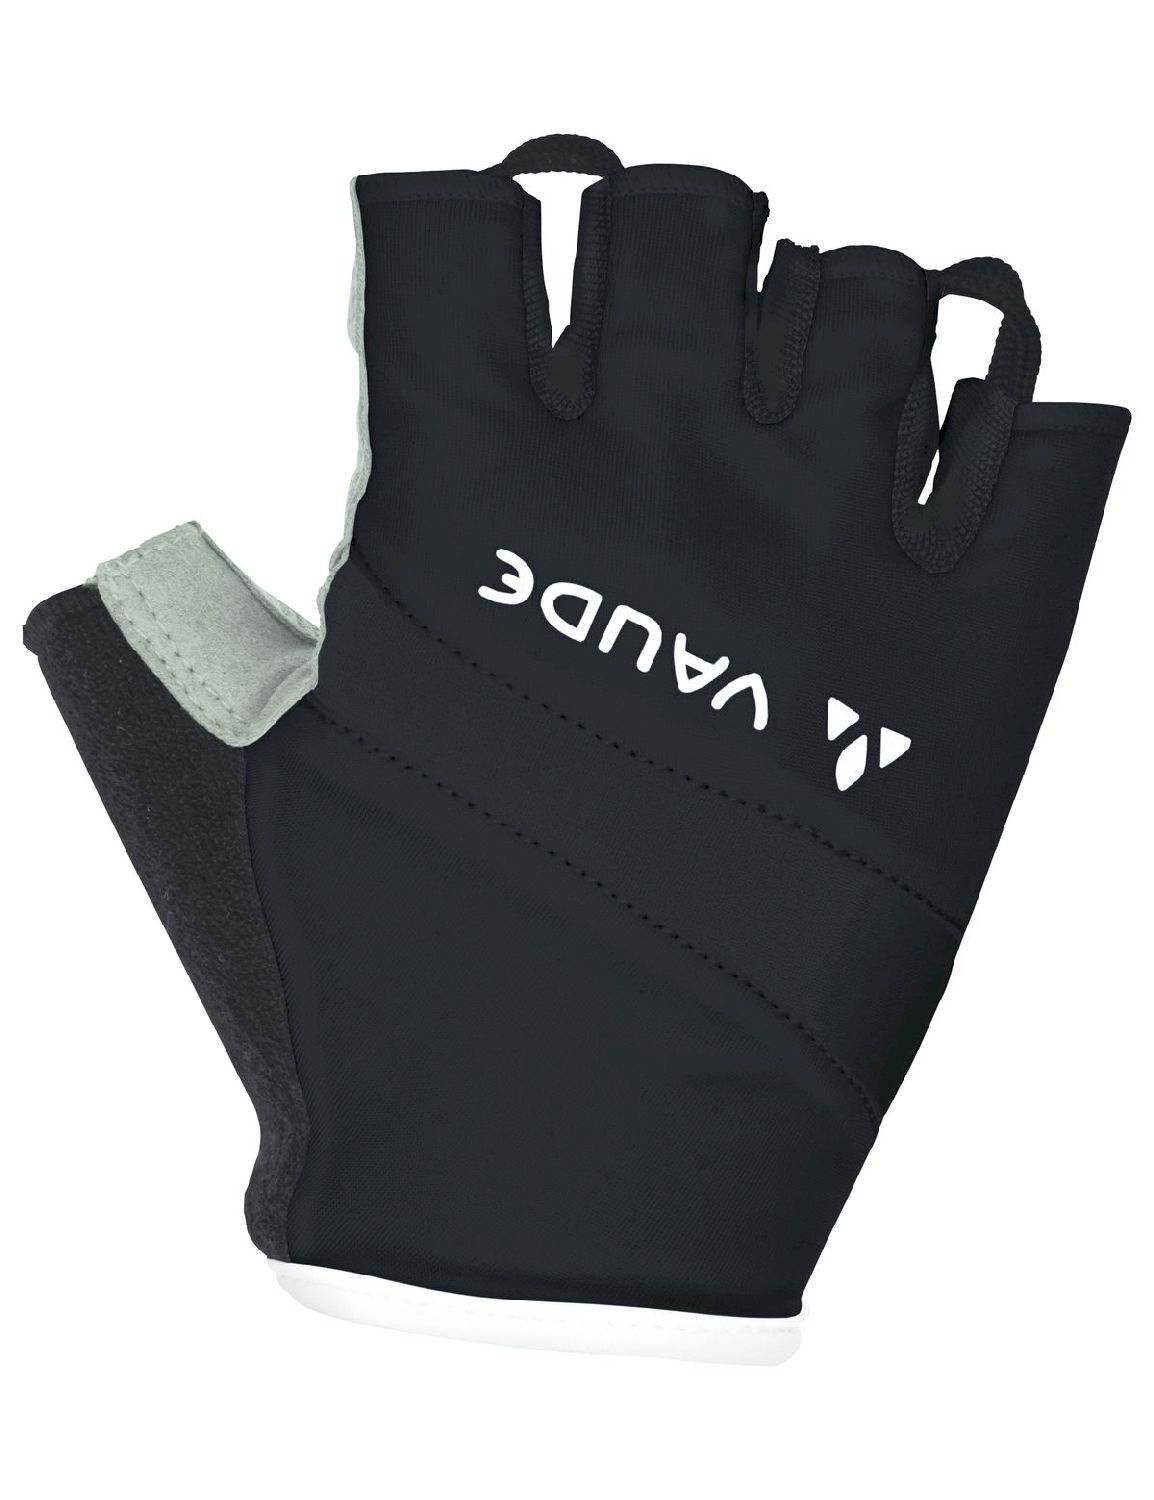 Vaude Active Gloves - Short finger gloves - Women's